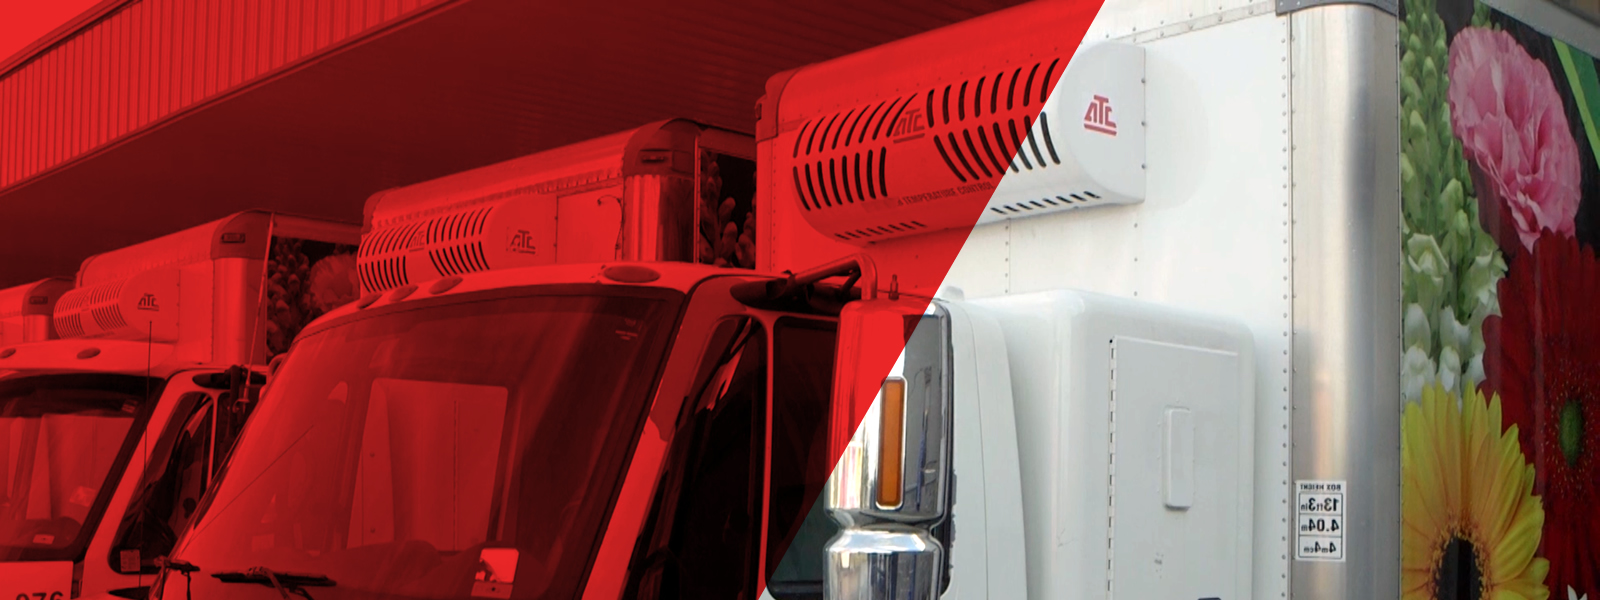 机头安装系统专为中型至大型盒装卡车和拖车设计，支持各种城市交付应用，可选机头安装电动备用。